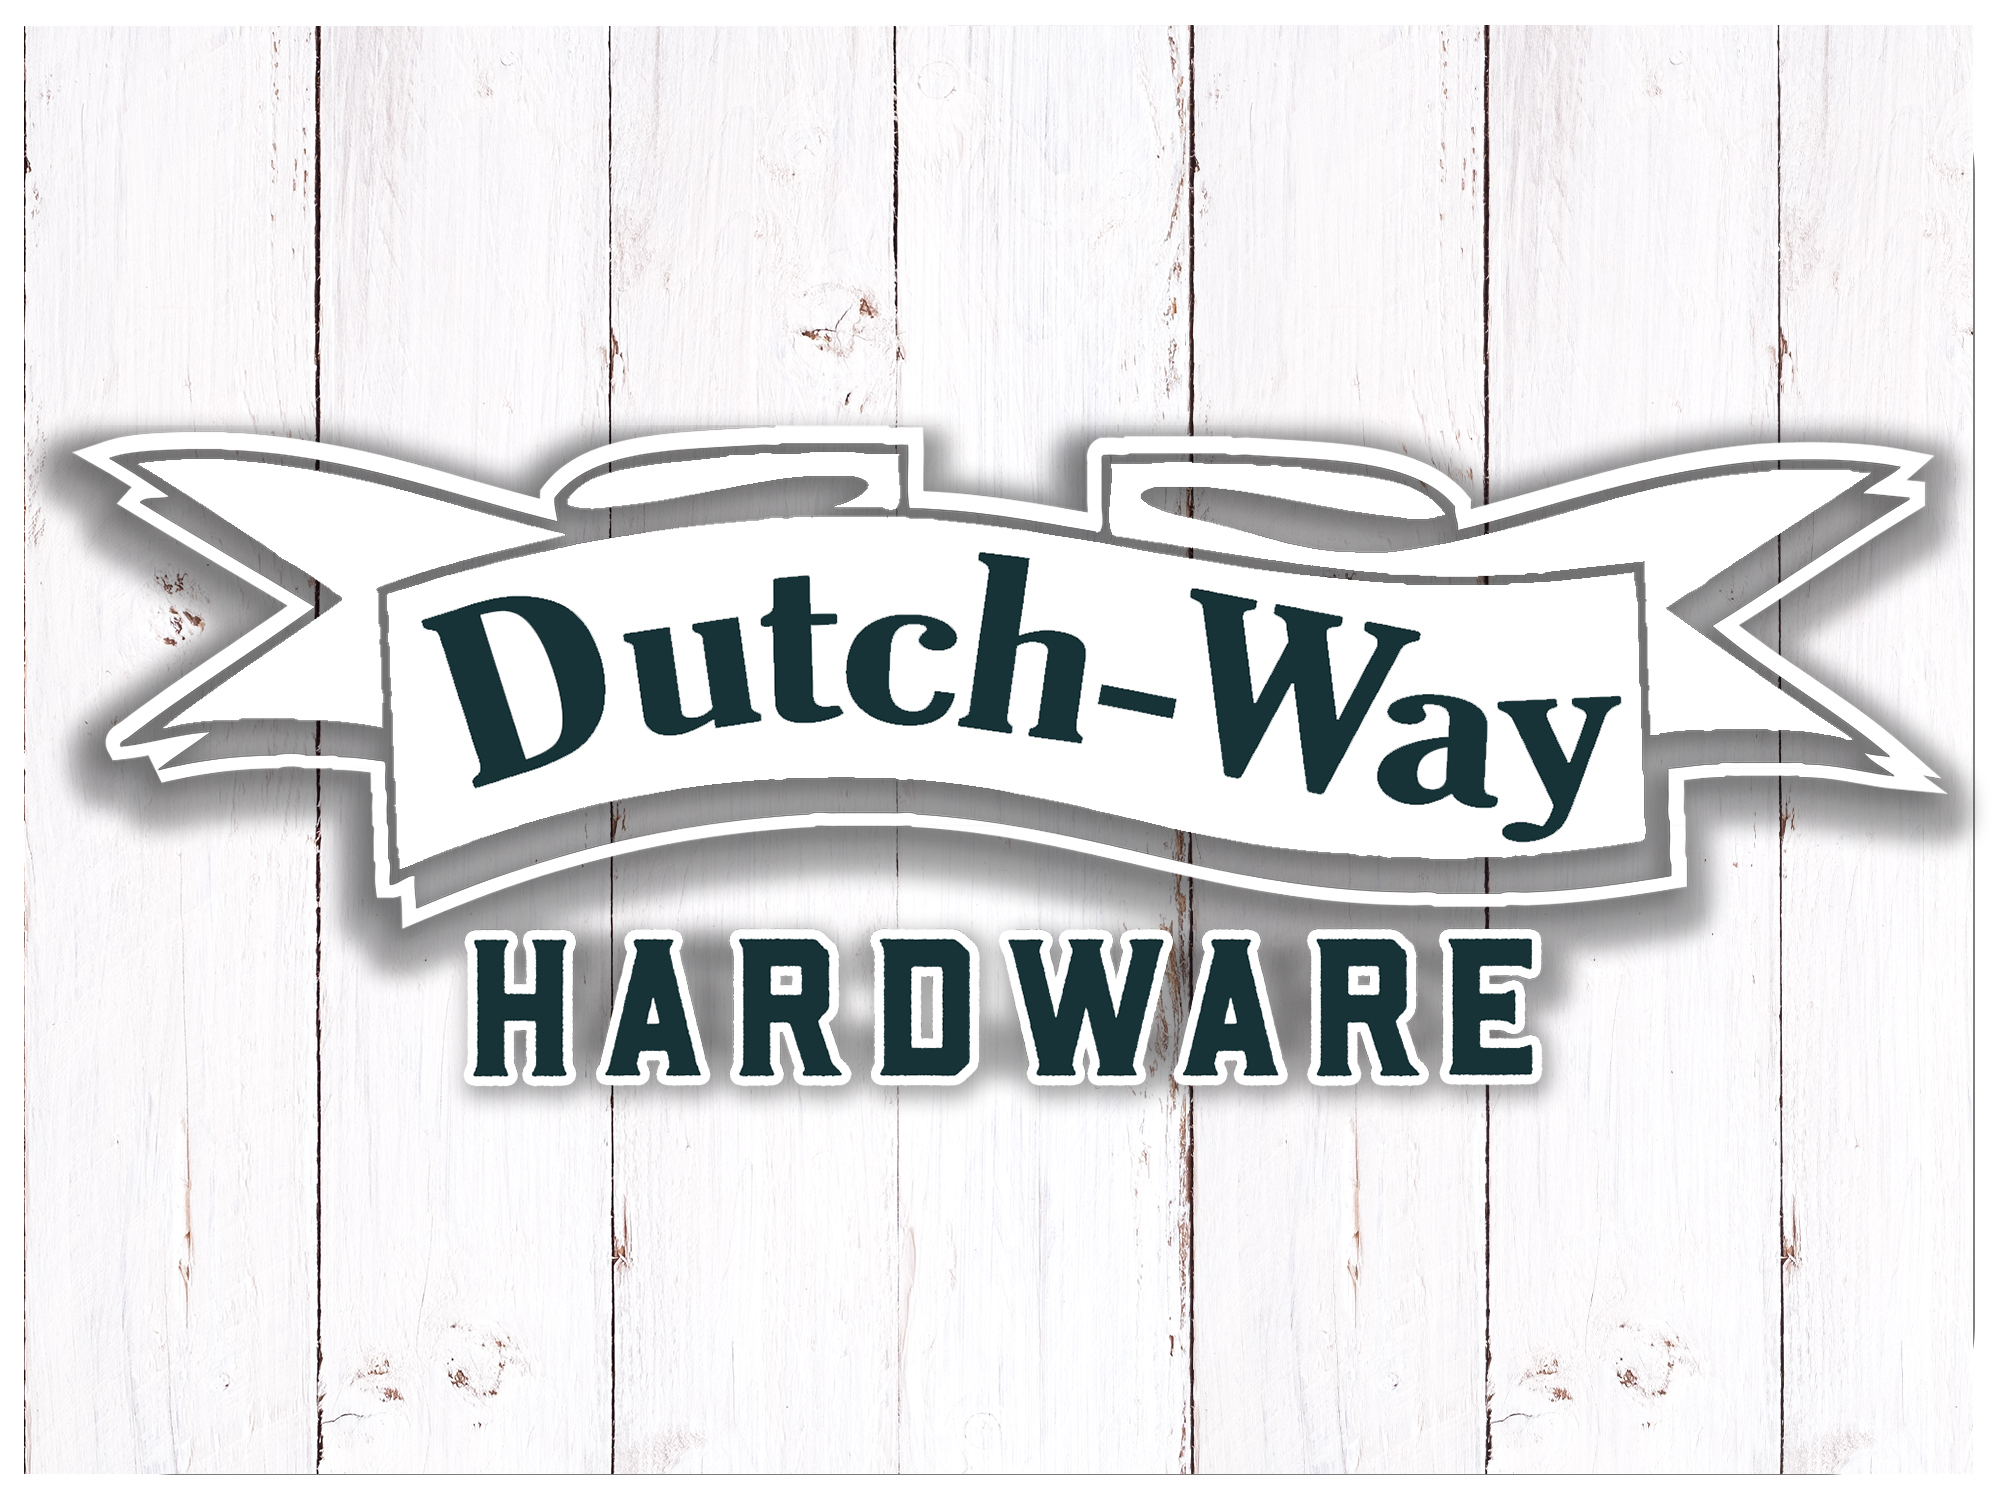 Dutch-Way Hardware